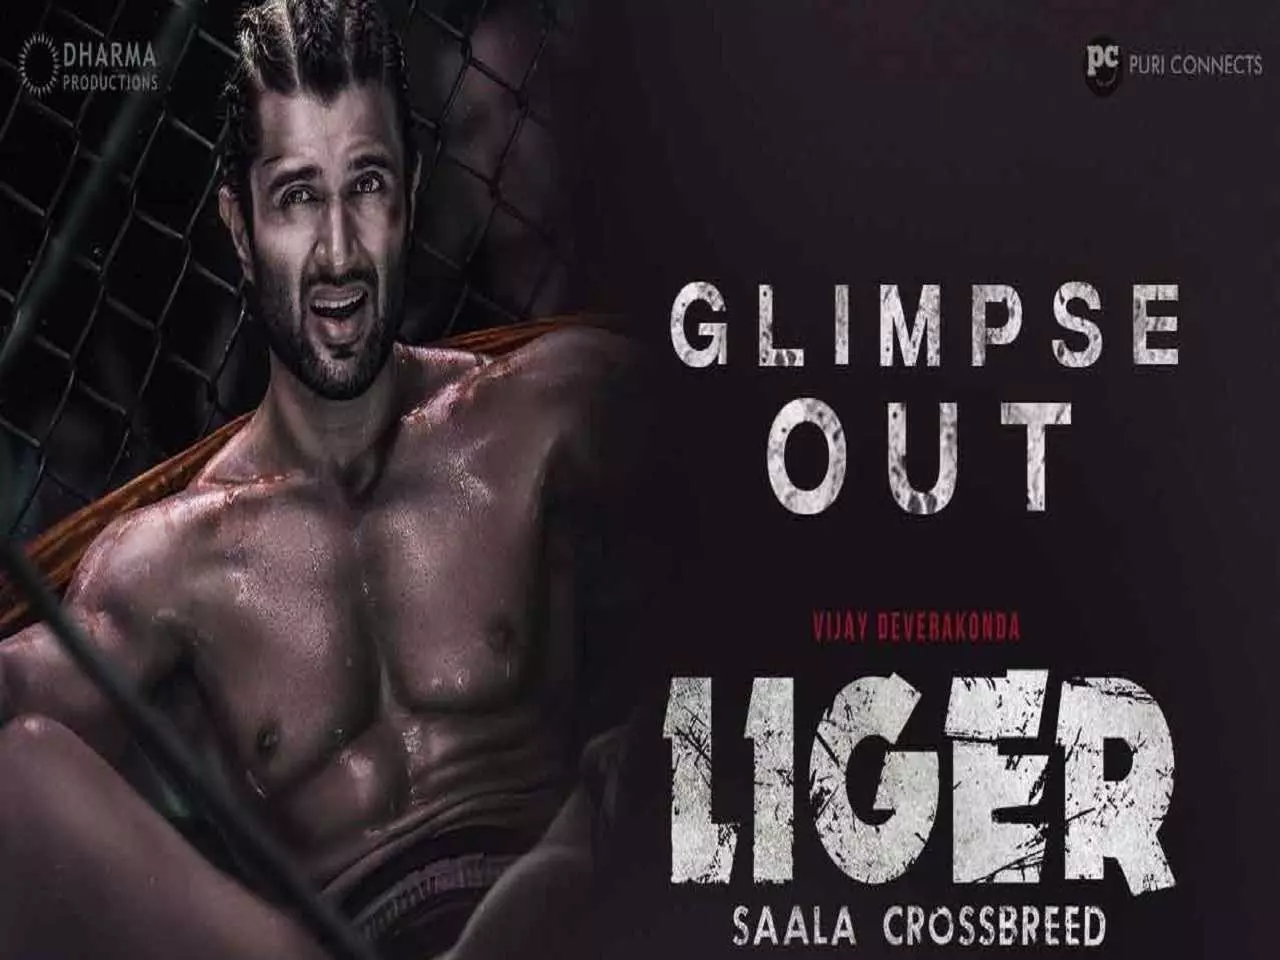 Vijay devarakonda nude poster for liger film getting viral on social media